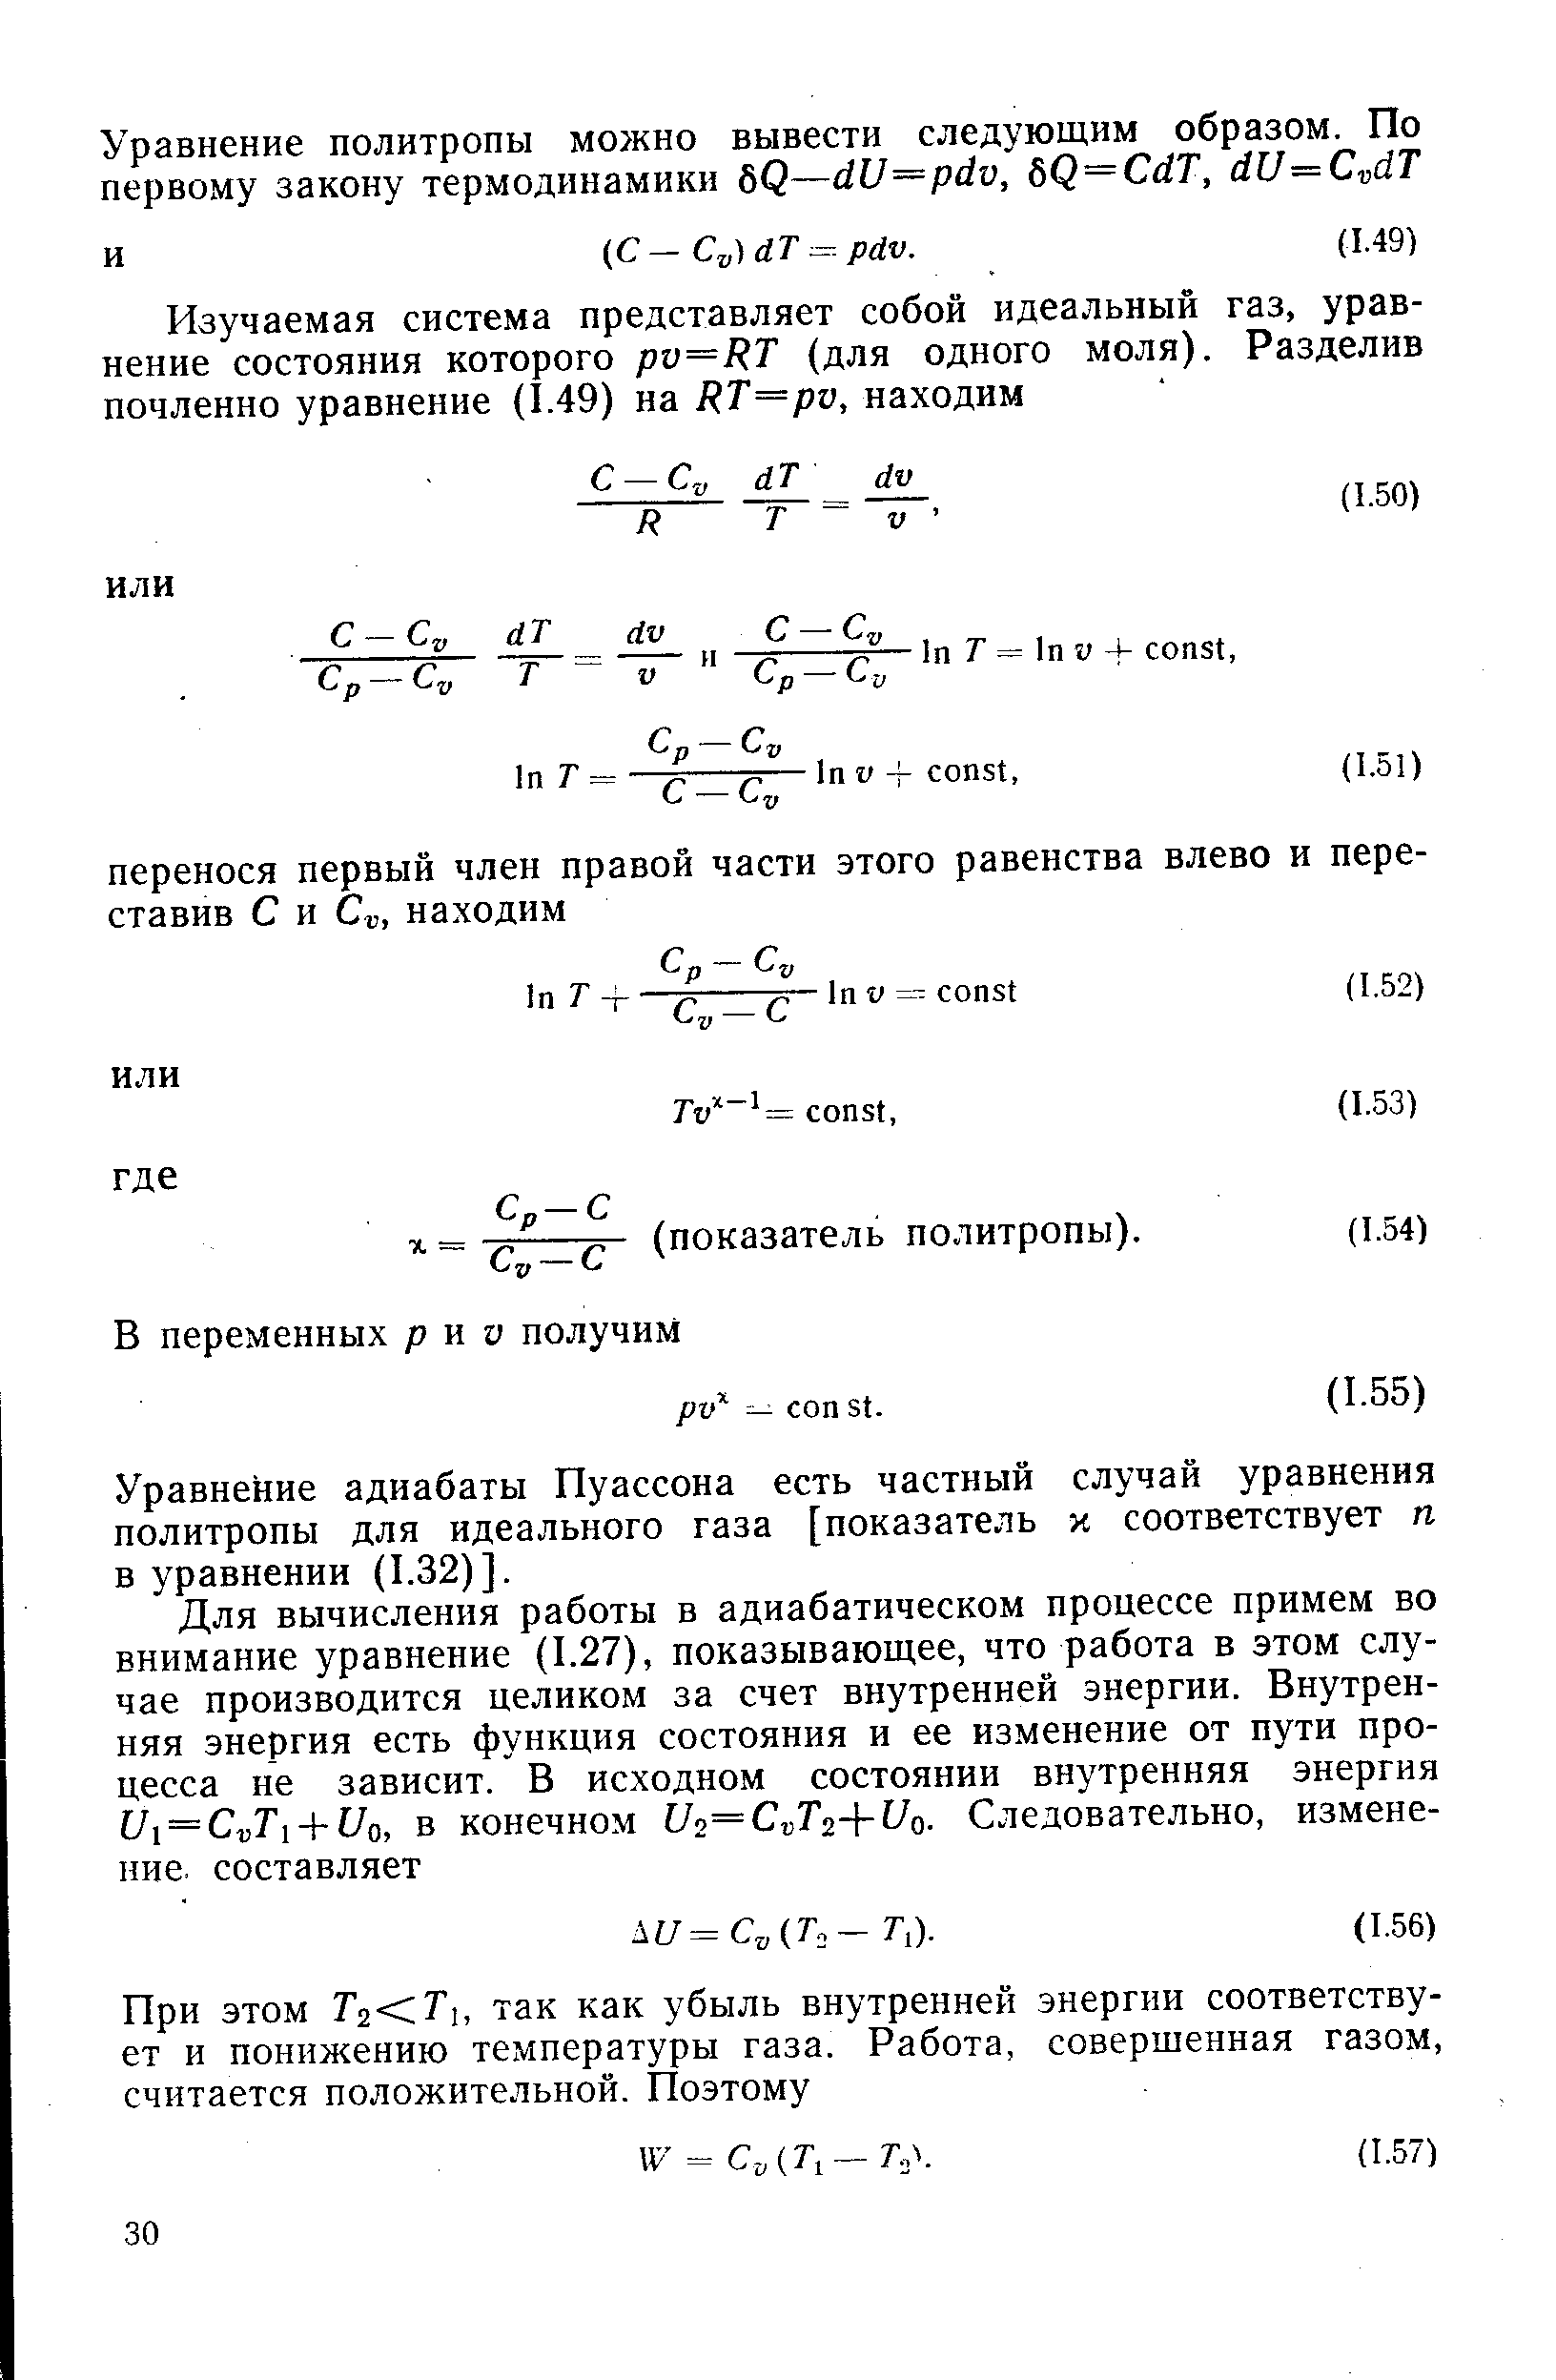 Уравнение адиабаты Пуассона есть частный случай уравнения политропы для идеального газа [показатель х соответствует п в уравнении (1.32)].